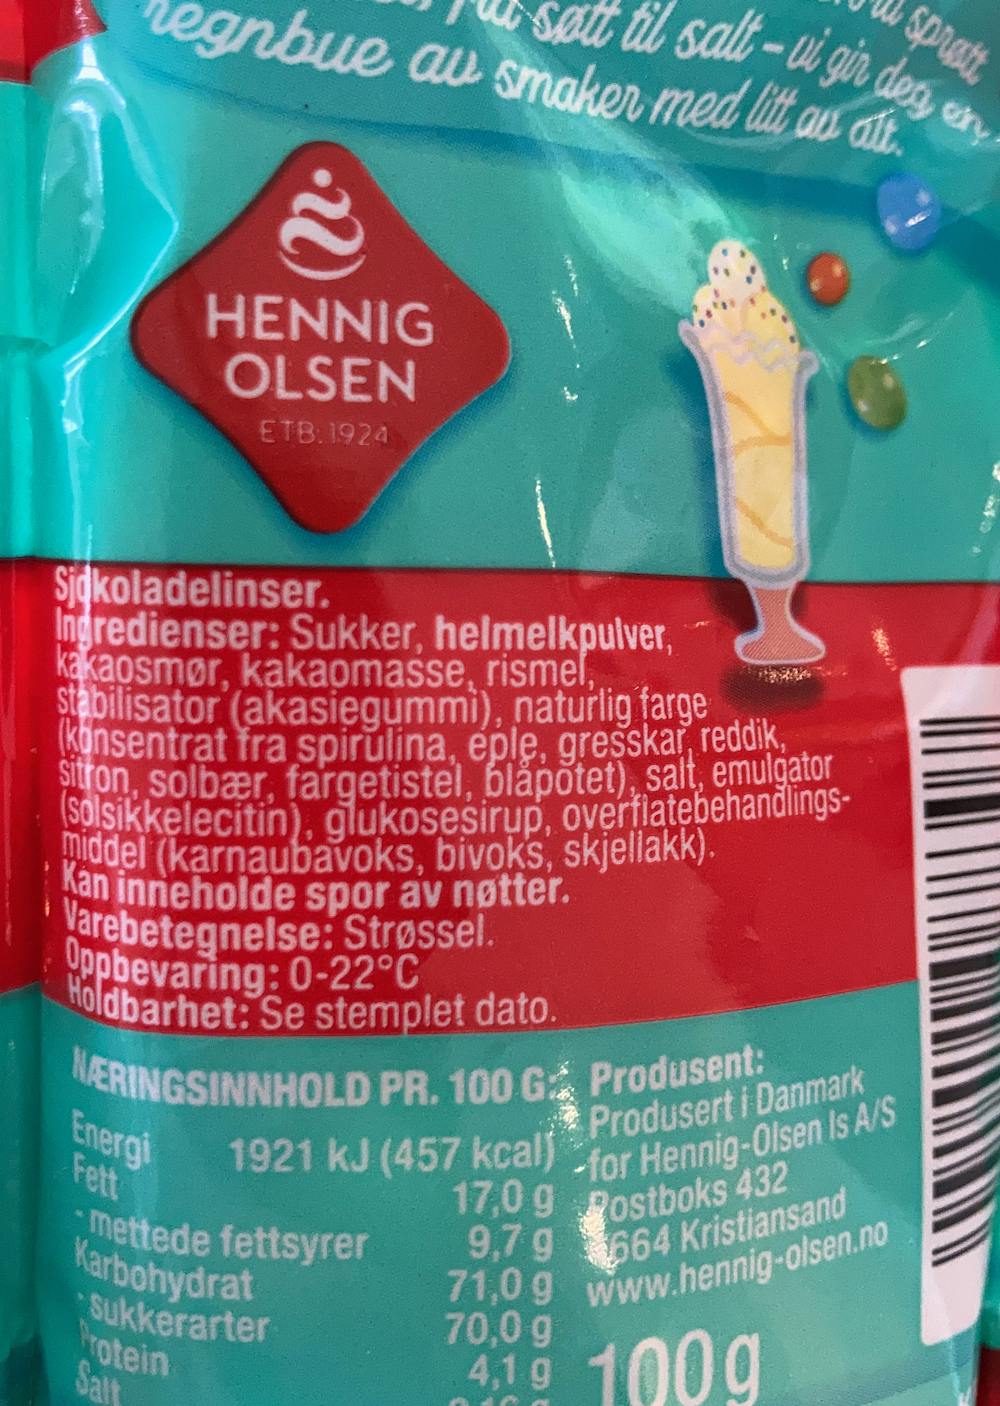 Ingredienslisten til Sjokoladelinser, Hennig-Olsen